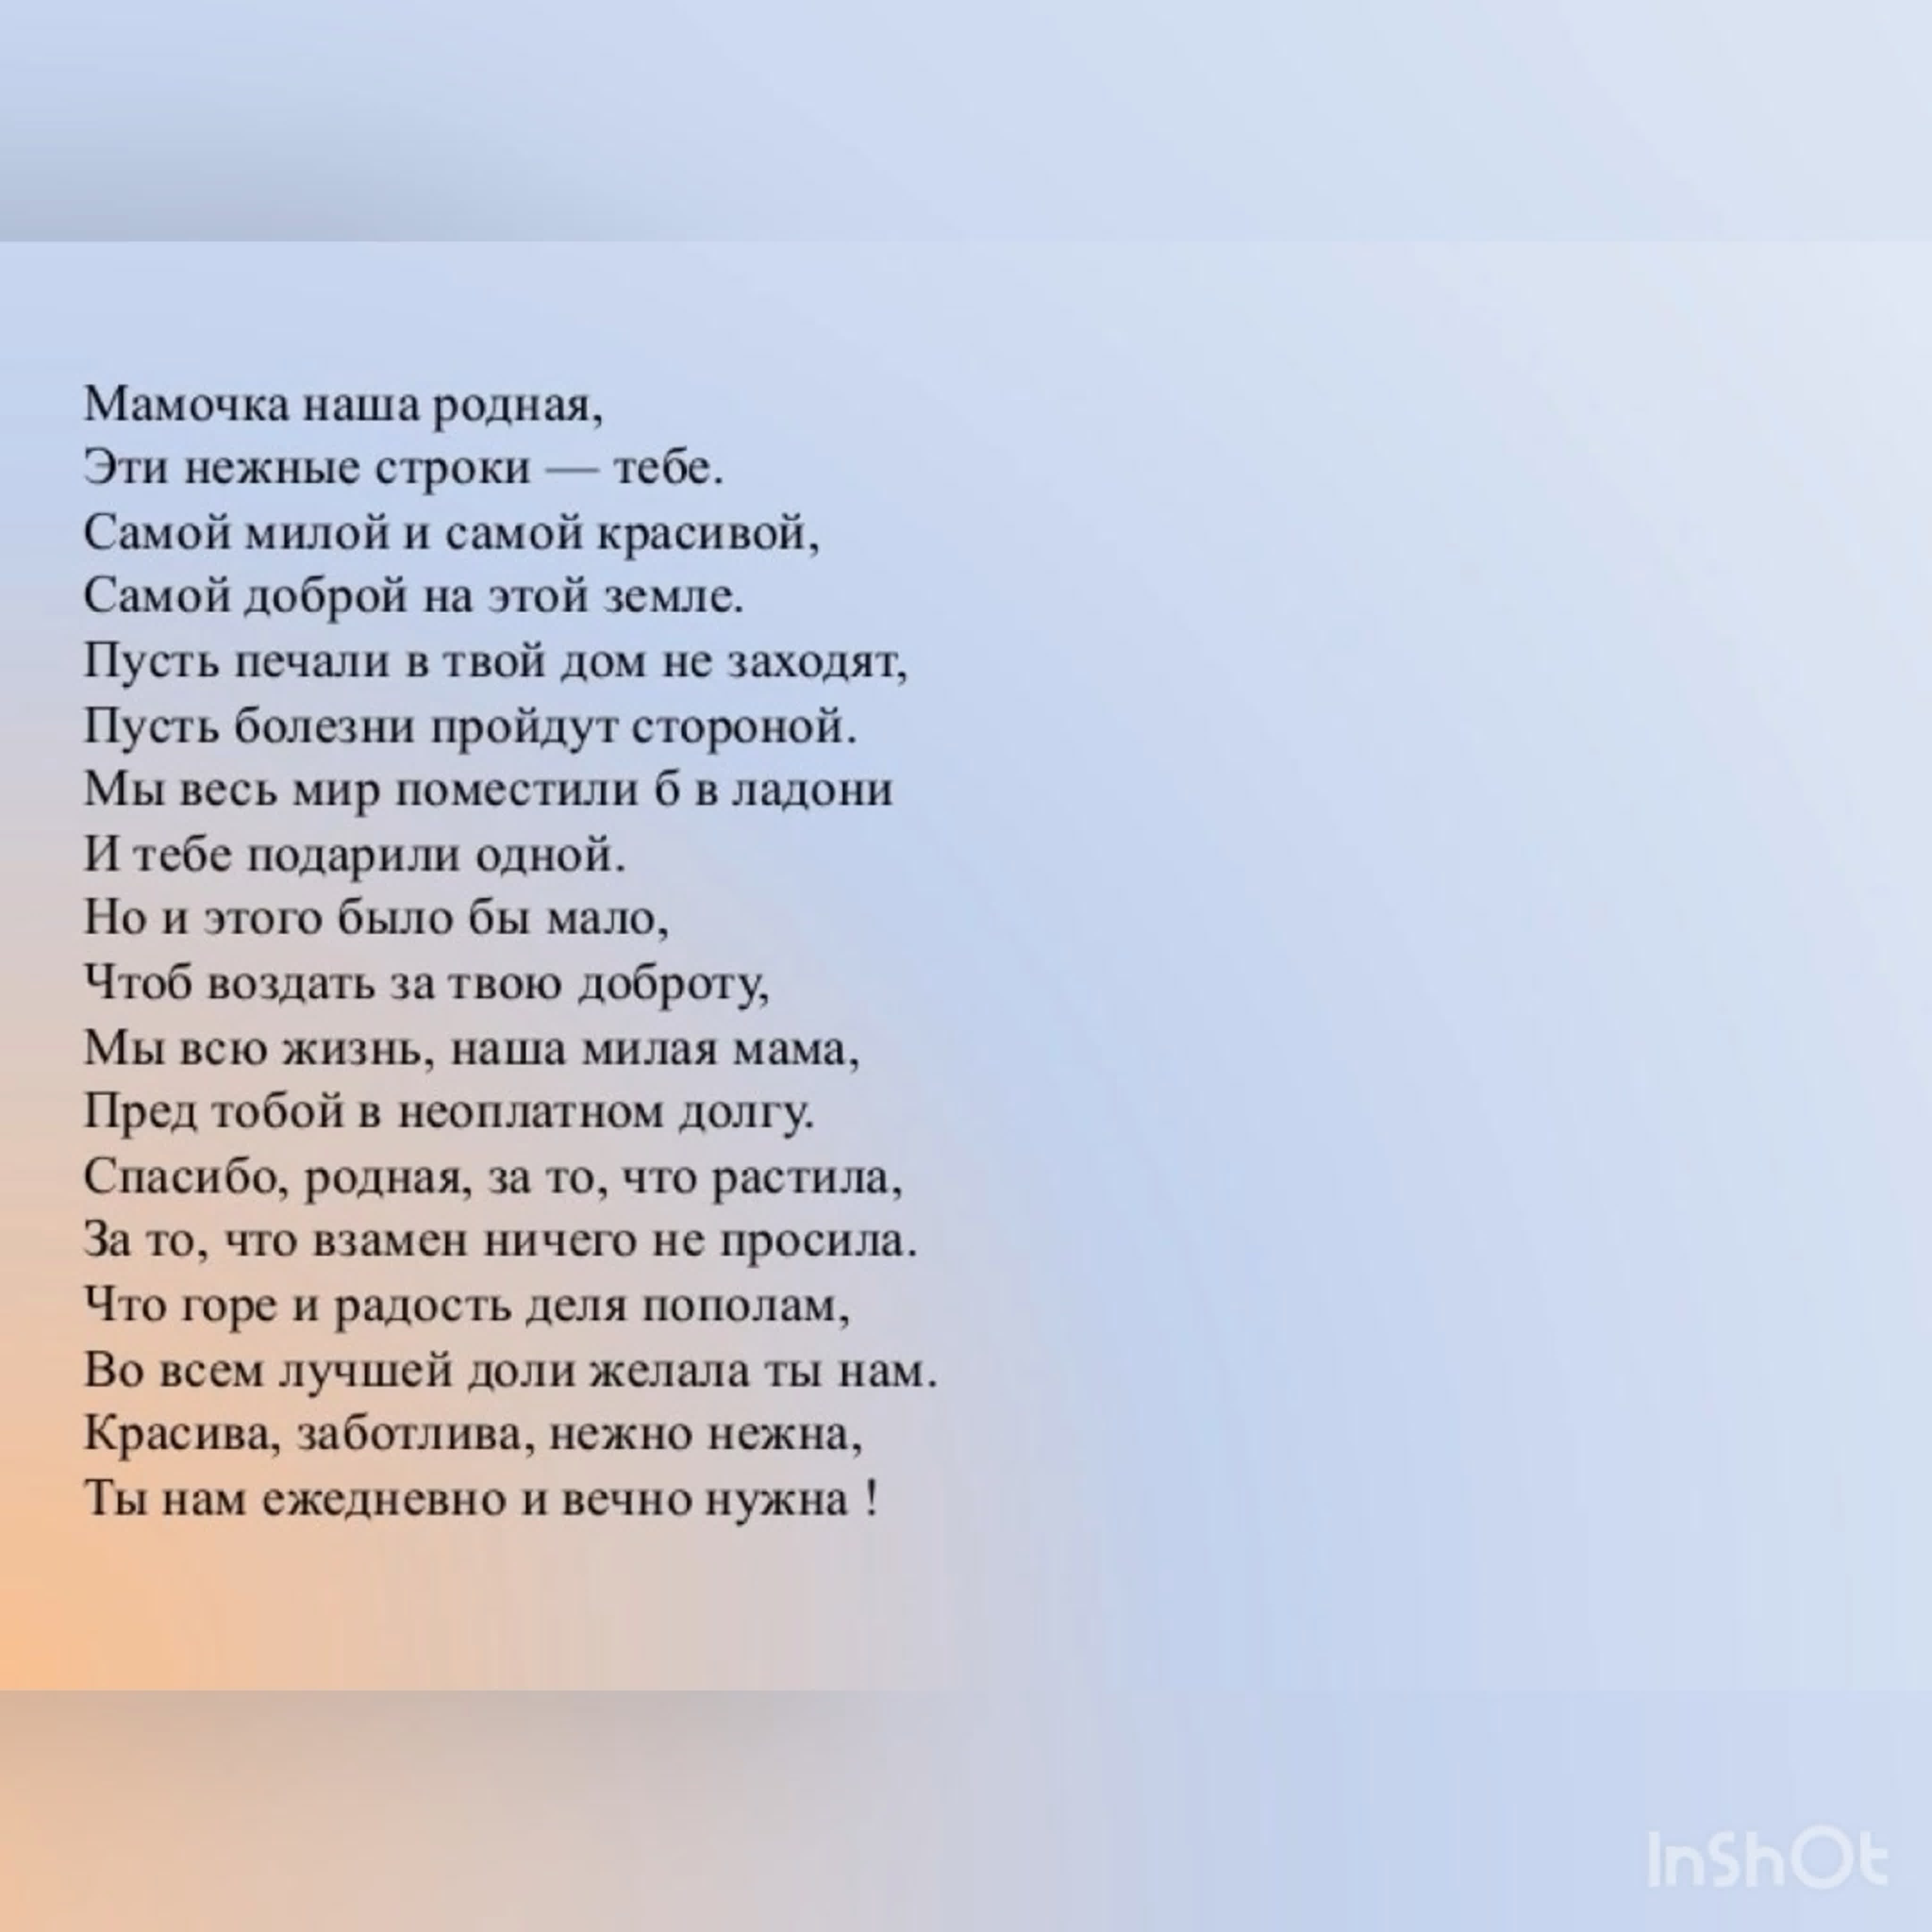 Аудио стихотворение маме. Красивое стихотворение про маму. Красивый стих про маму. Самые красивые стихи. Самое красивое стихотворение про маму.